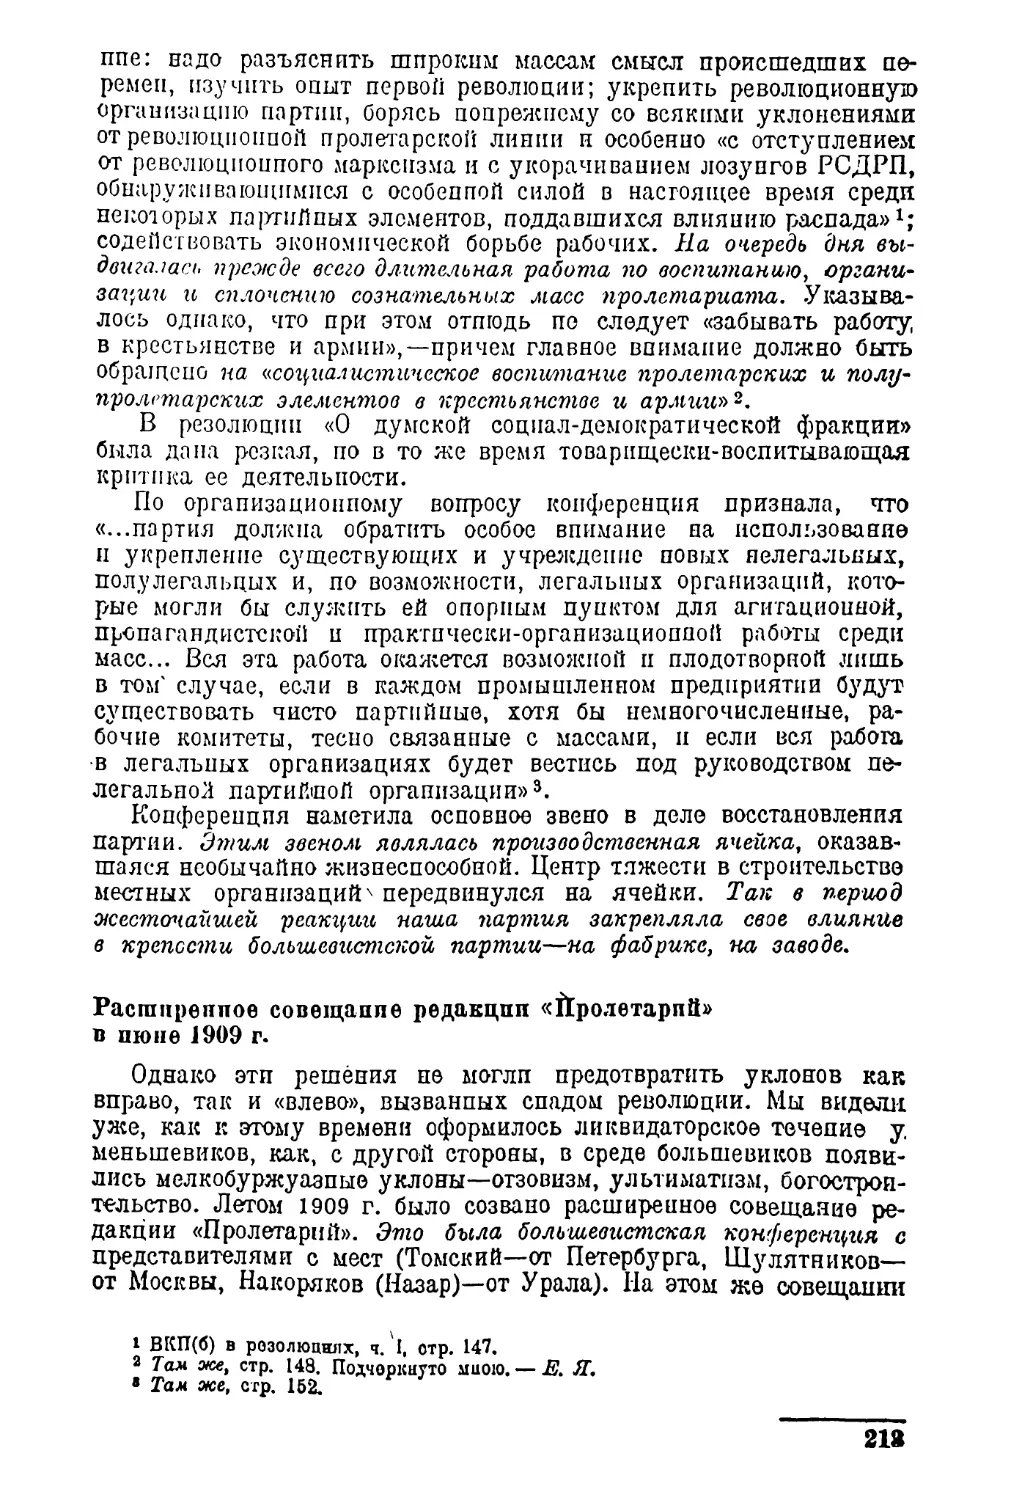 Расширенное совещание редакции «Пролетарий» в июне 1909 г.